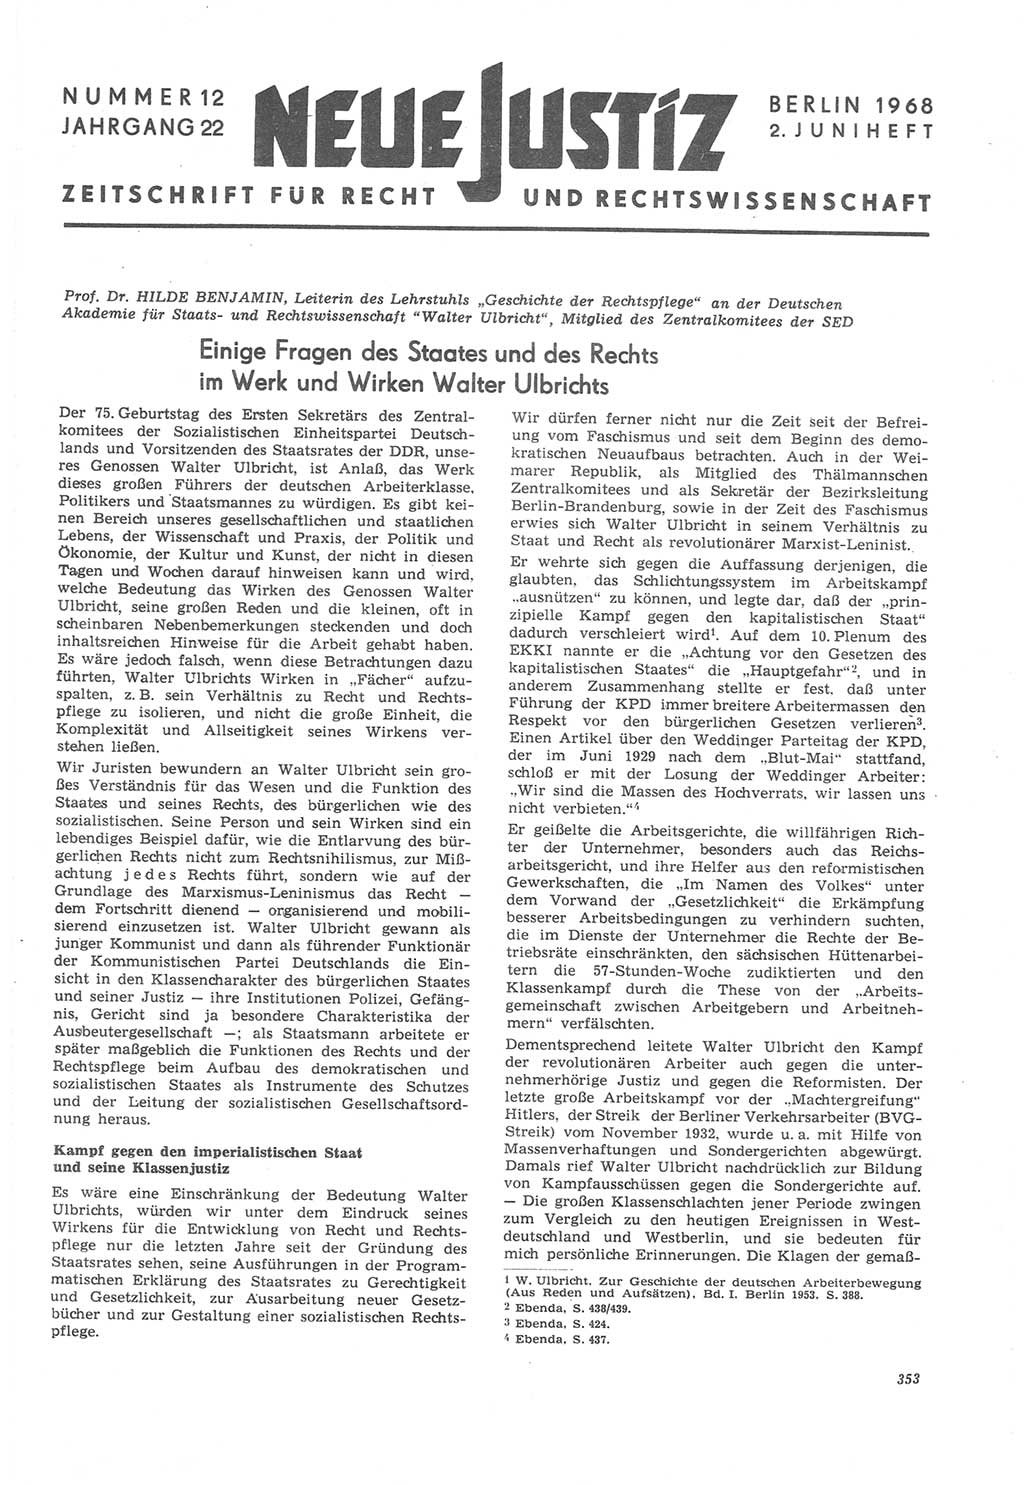 Neue Justiz (NJ), Zeitschrift für Recht und Rechtswissenschaft [Deutsche Demokratische Republik (DDR)], 22. Jahrgang 1968, Seite 353 (NJ DDR 1968, S. 353)